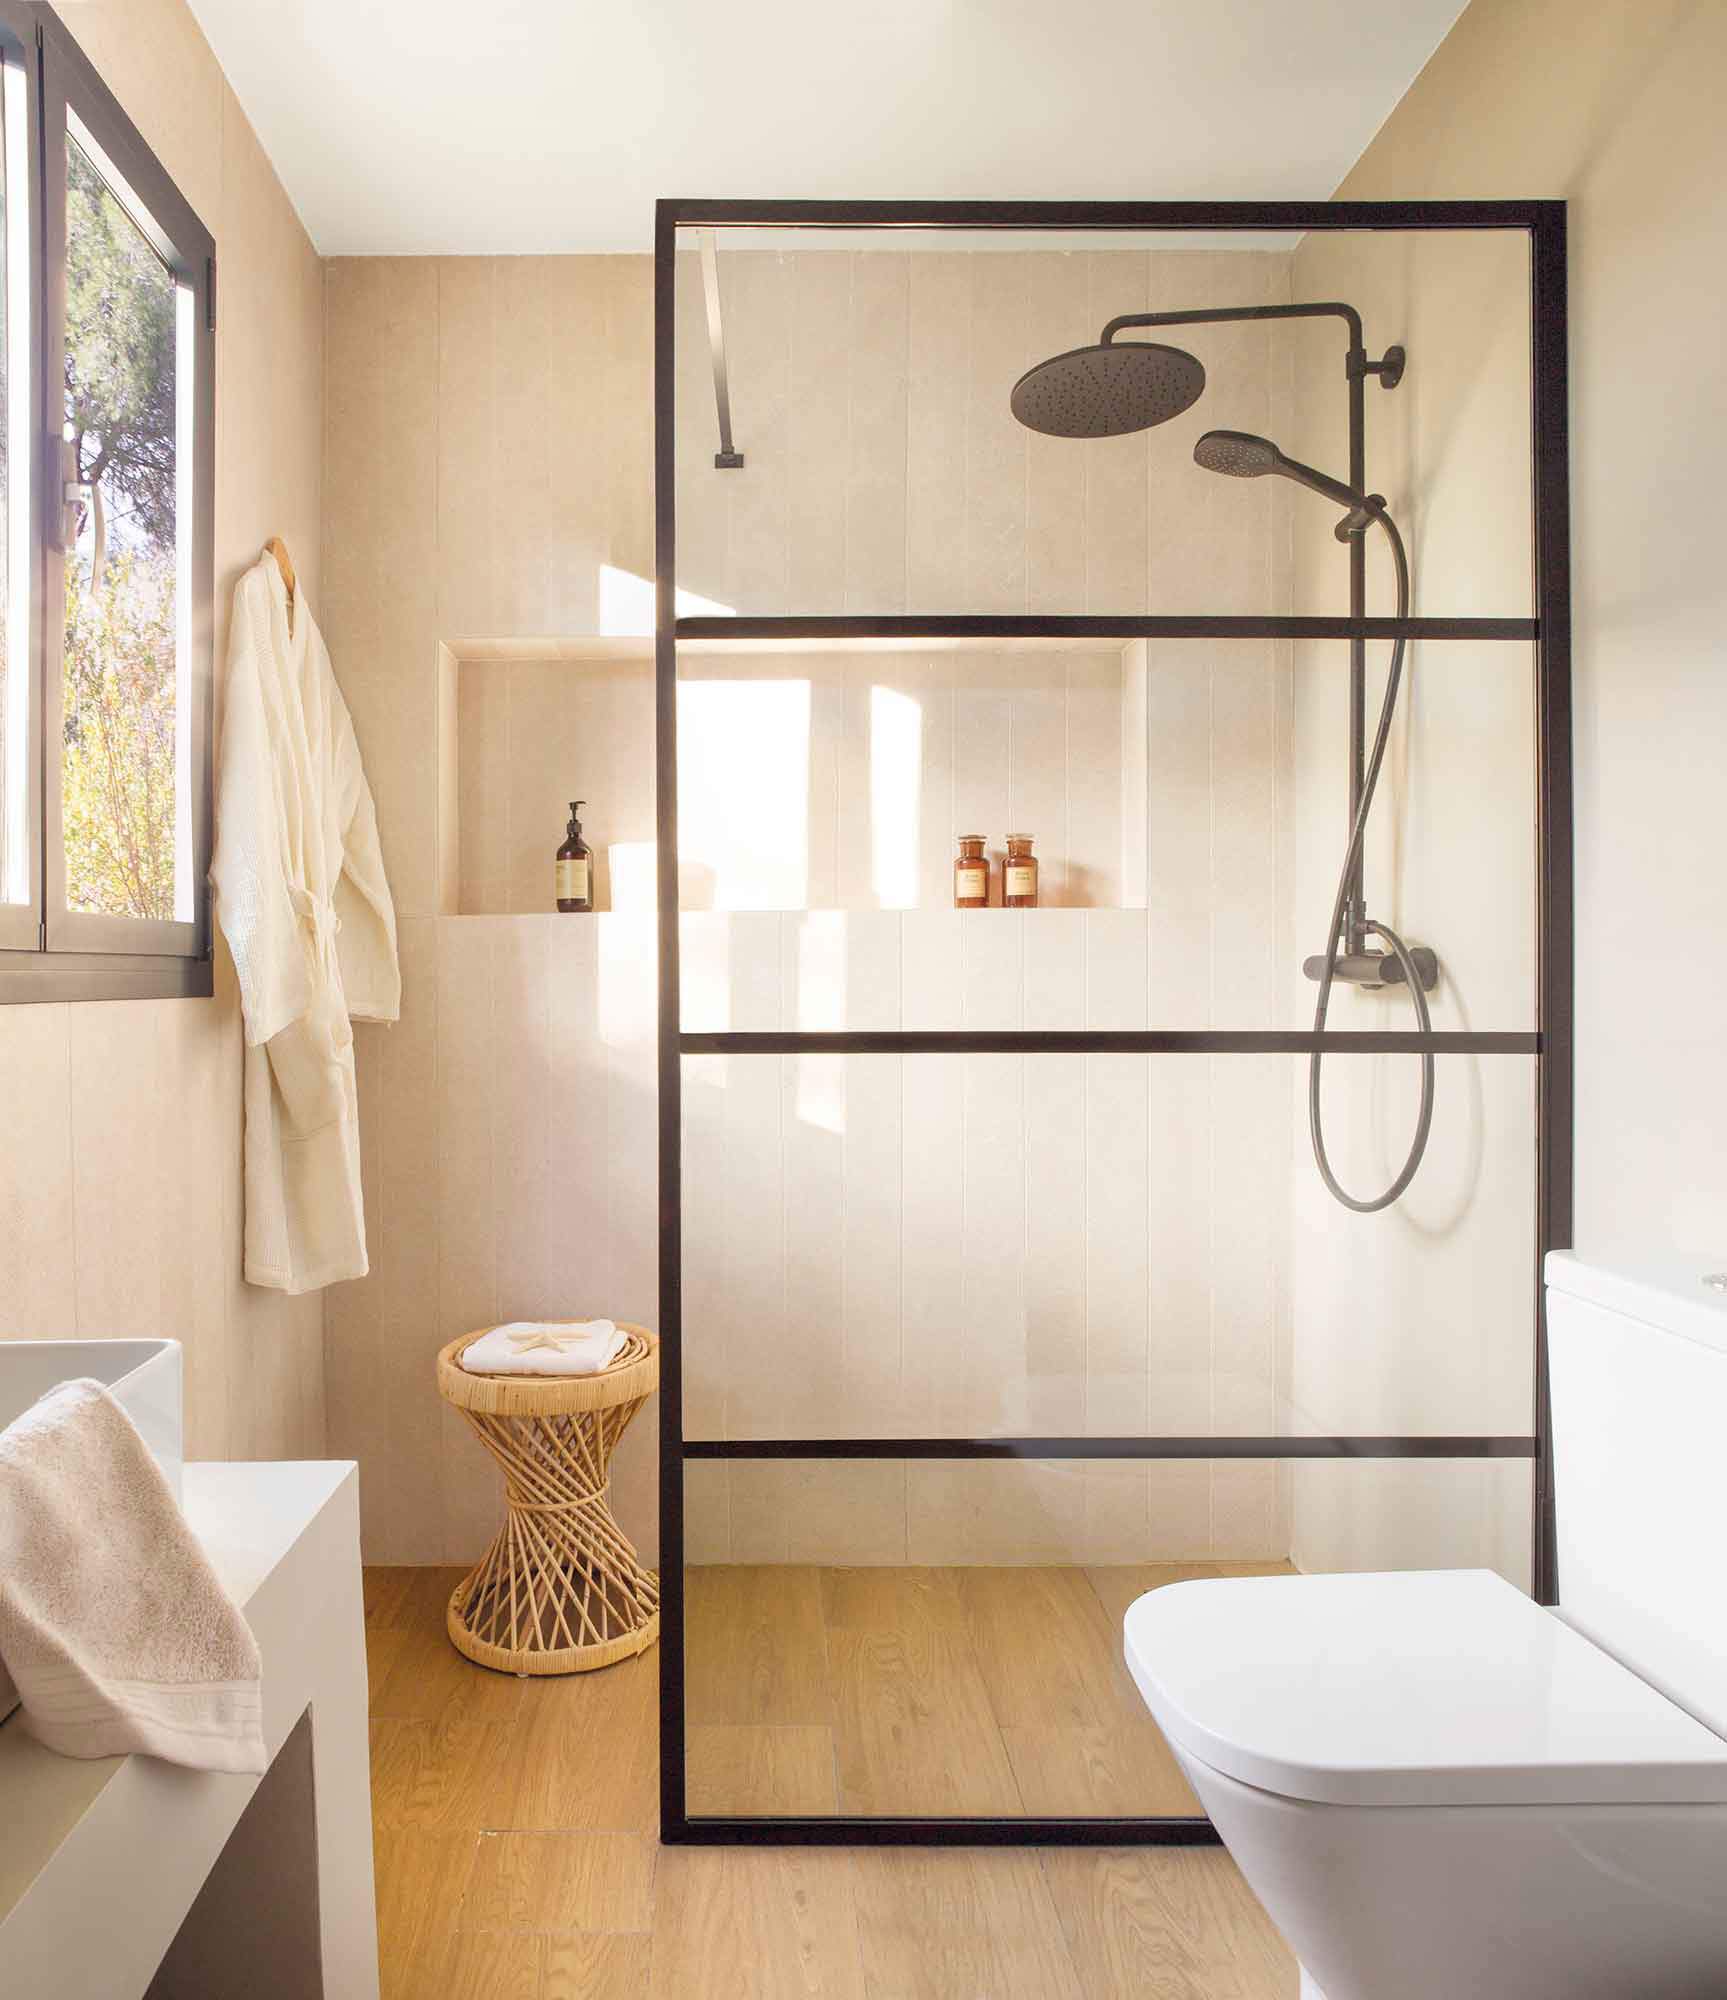 Baño moderno con suelo de madera, ducha con grifería negra y mampara. 